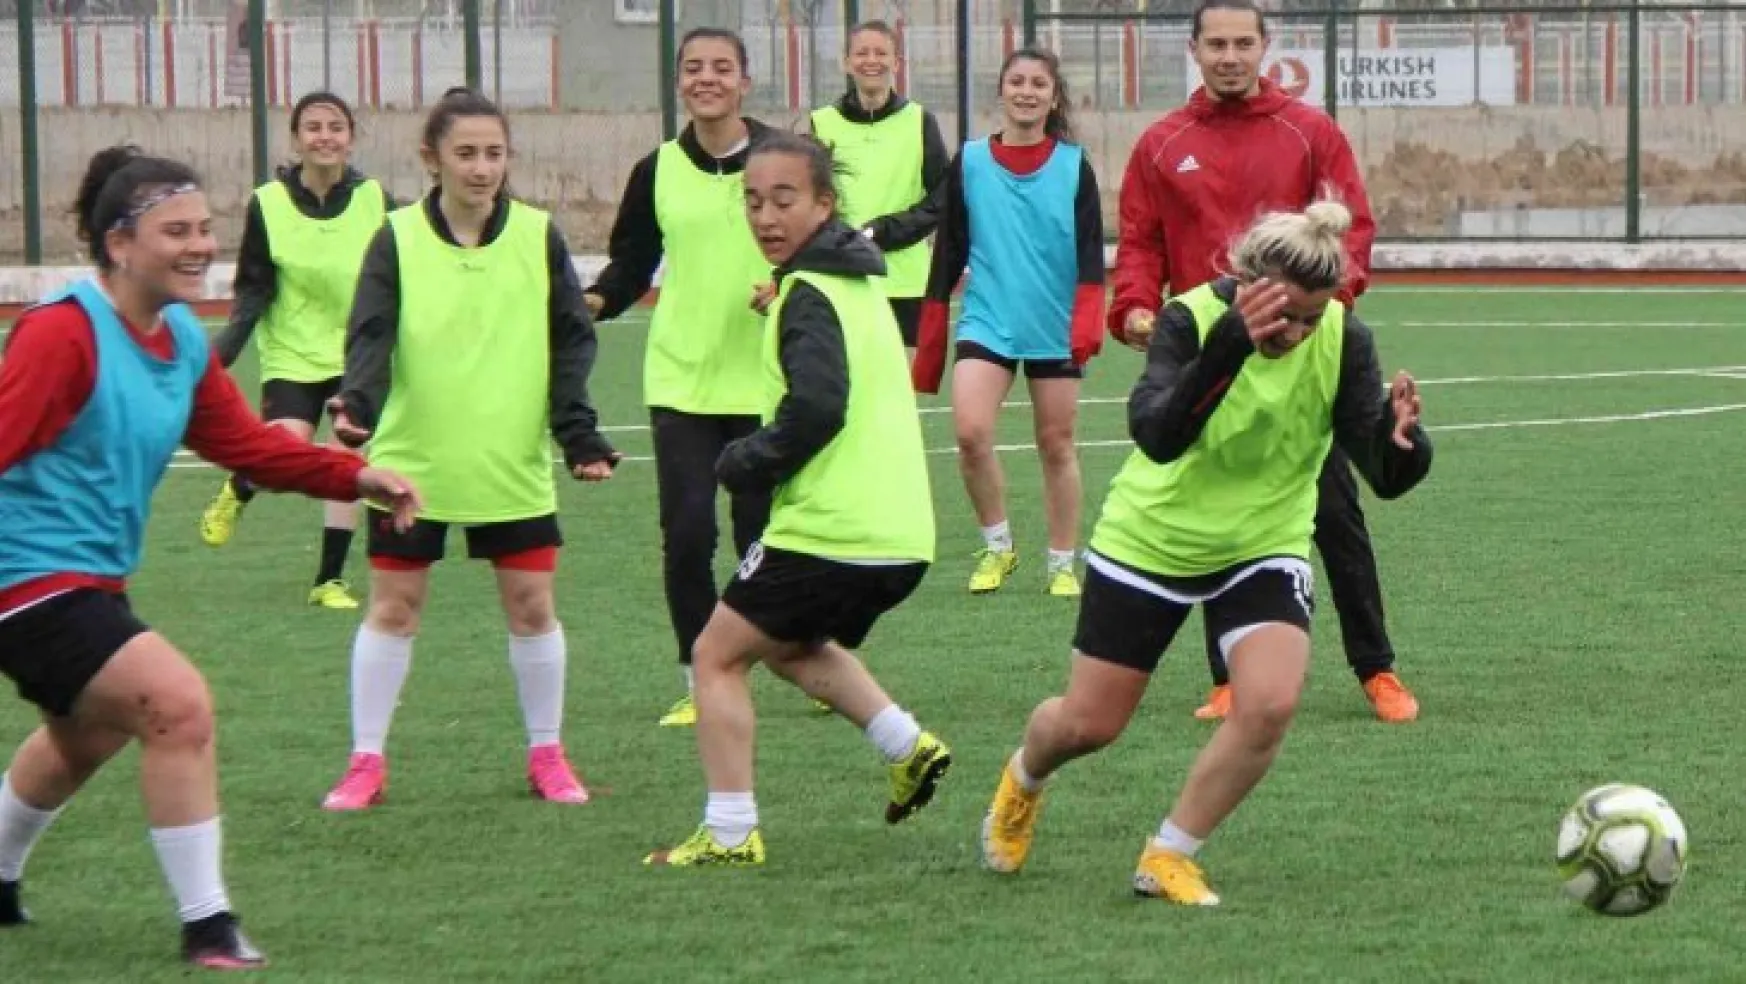 Sivasspor Kadın Futbol Takımı ligde kalmak istiyor